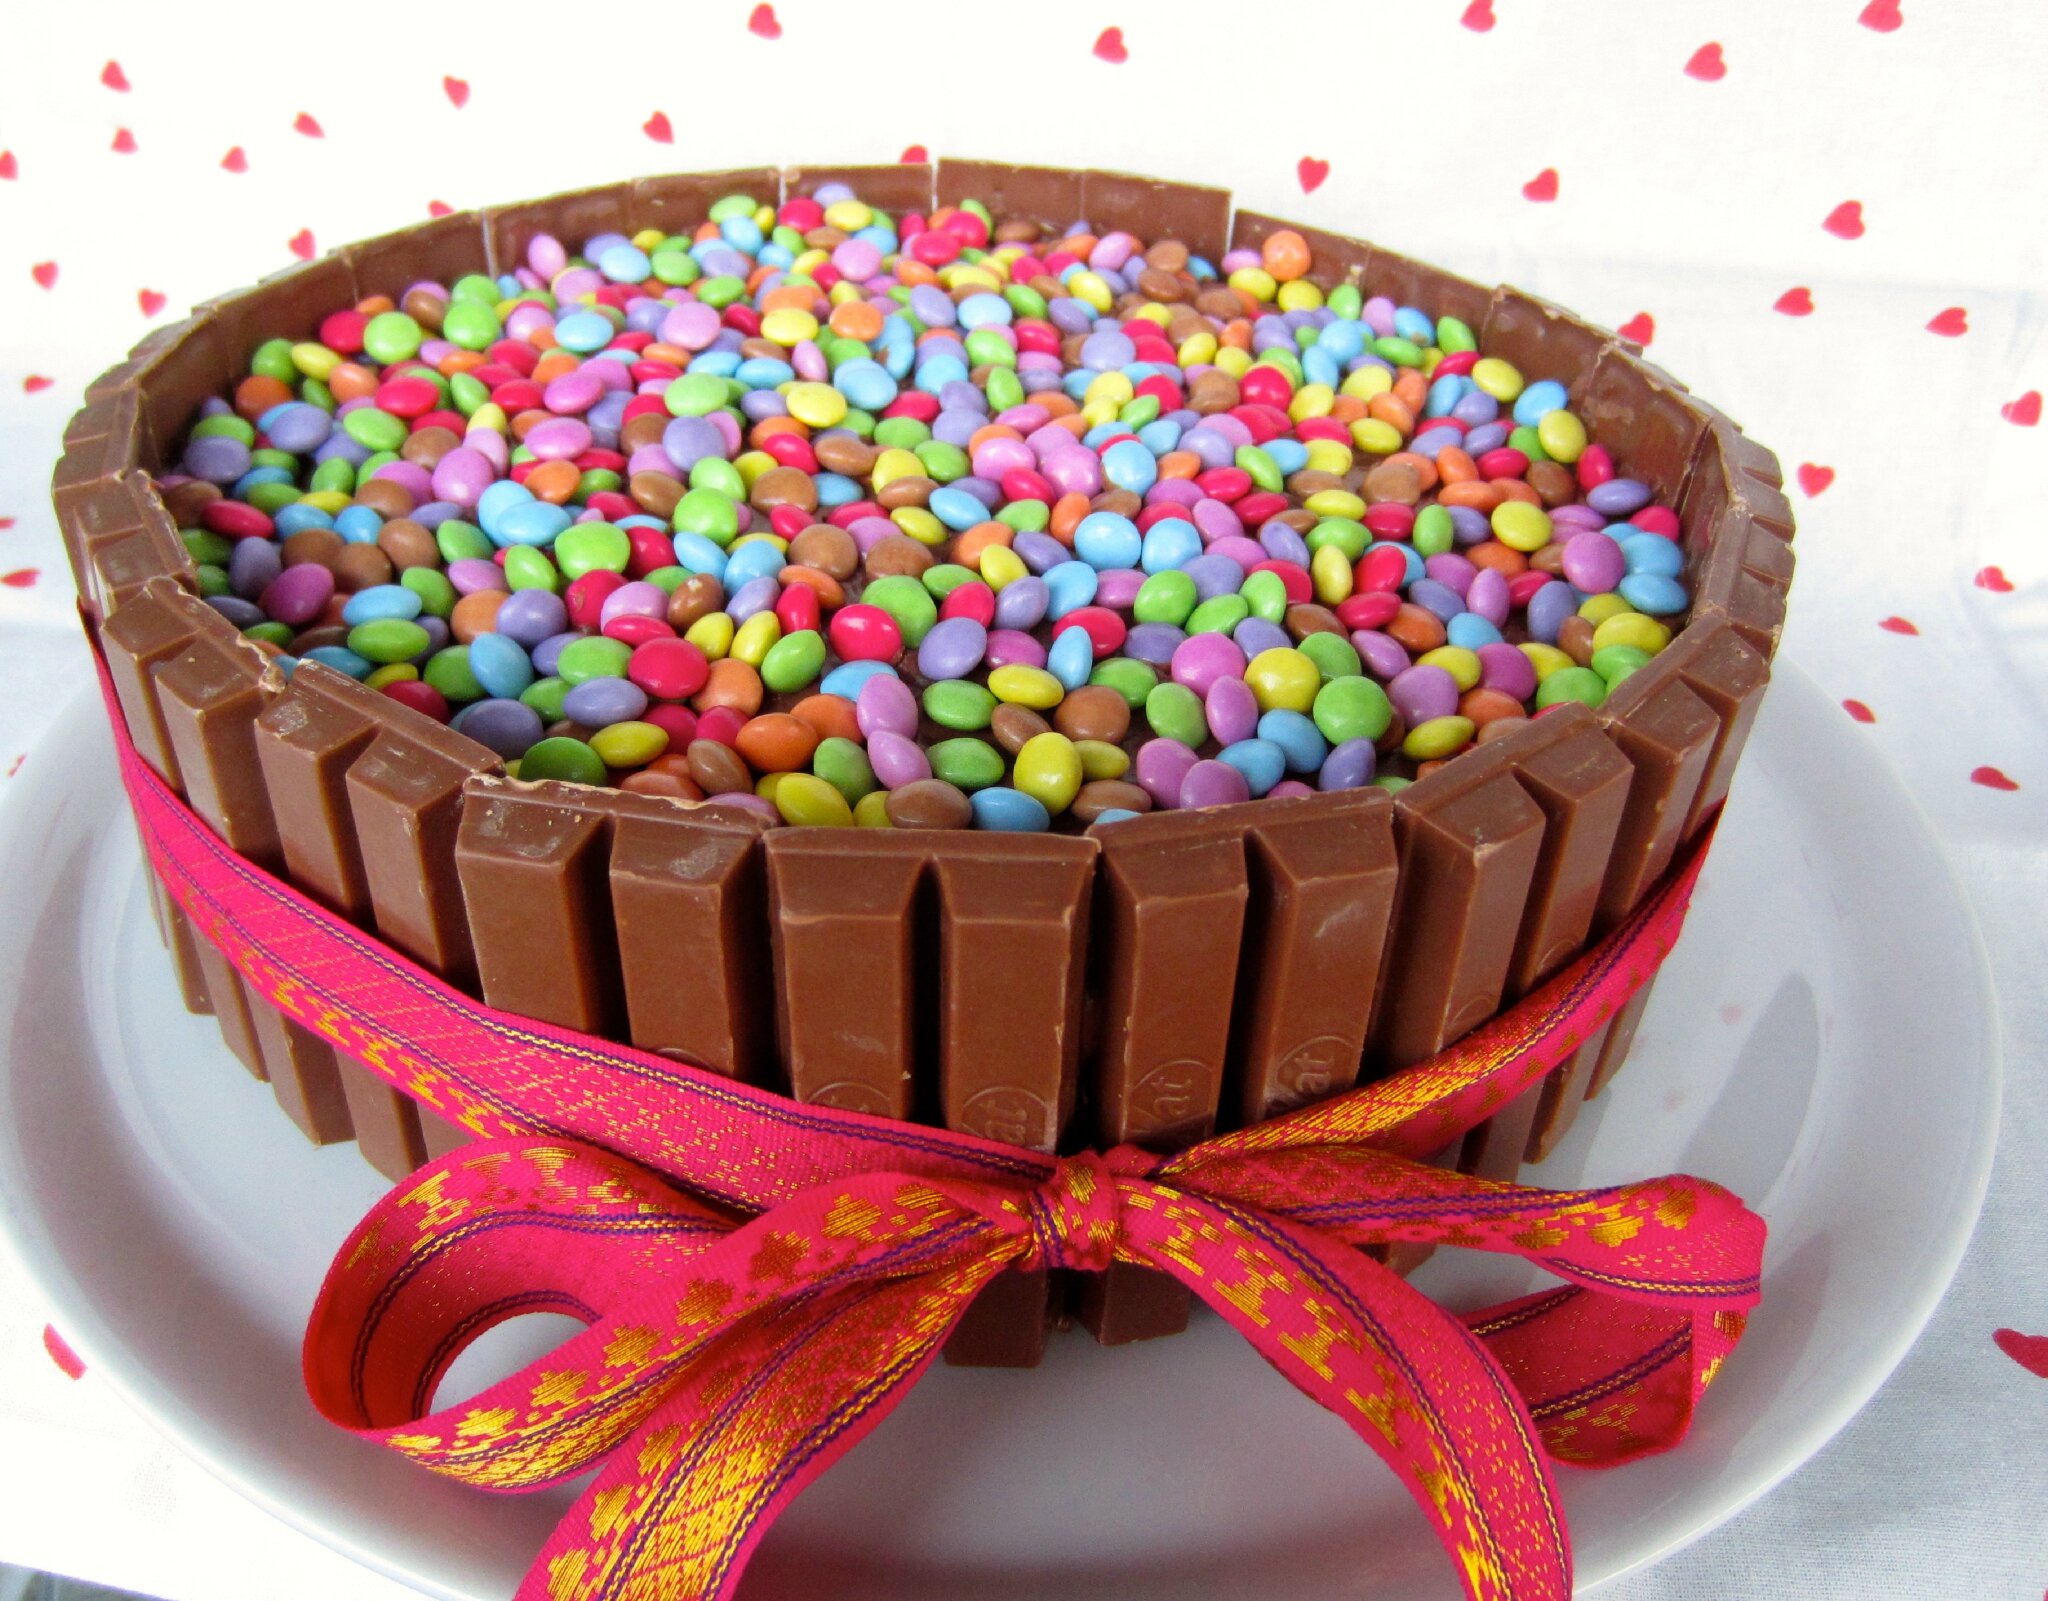 faire un beau gateau d anniversaire - Comment faire un gâteau d'anniversaire personnalisé 